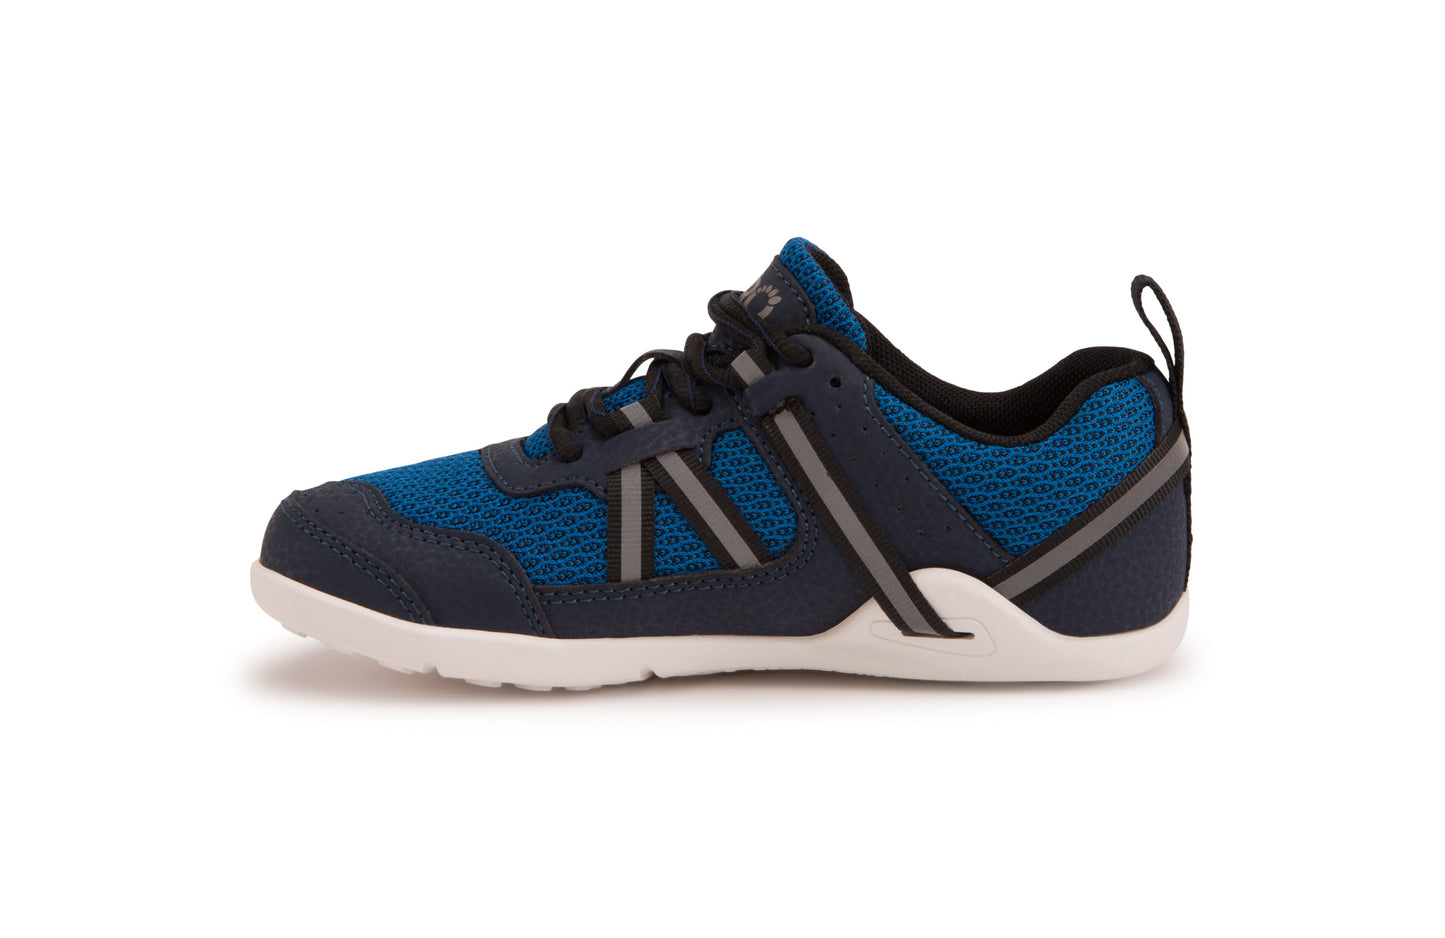 Xero Shoes Prio Kids barfods træningssko/sneakers til børn i farven mykonos blue, inderside